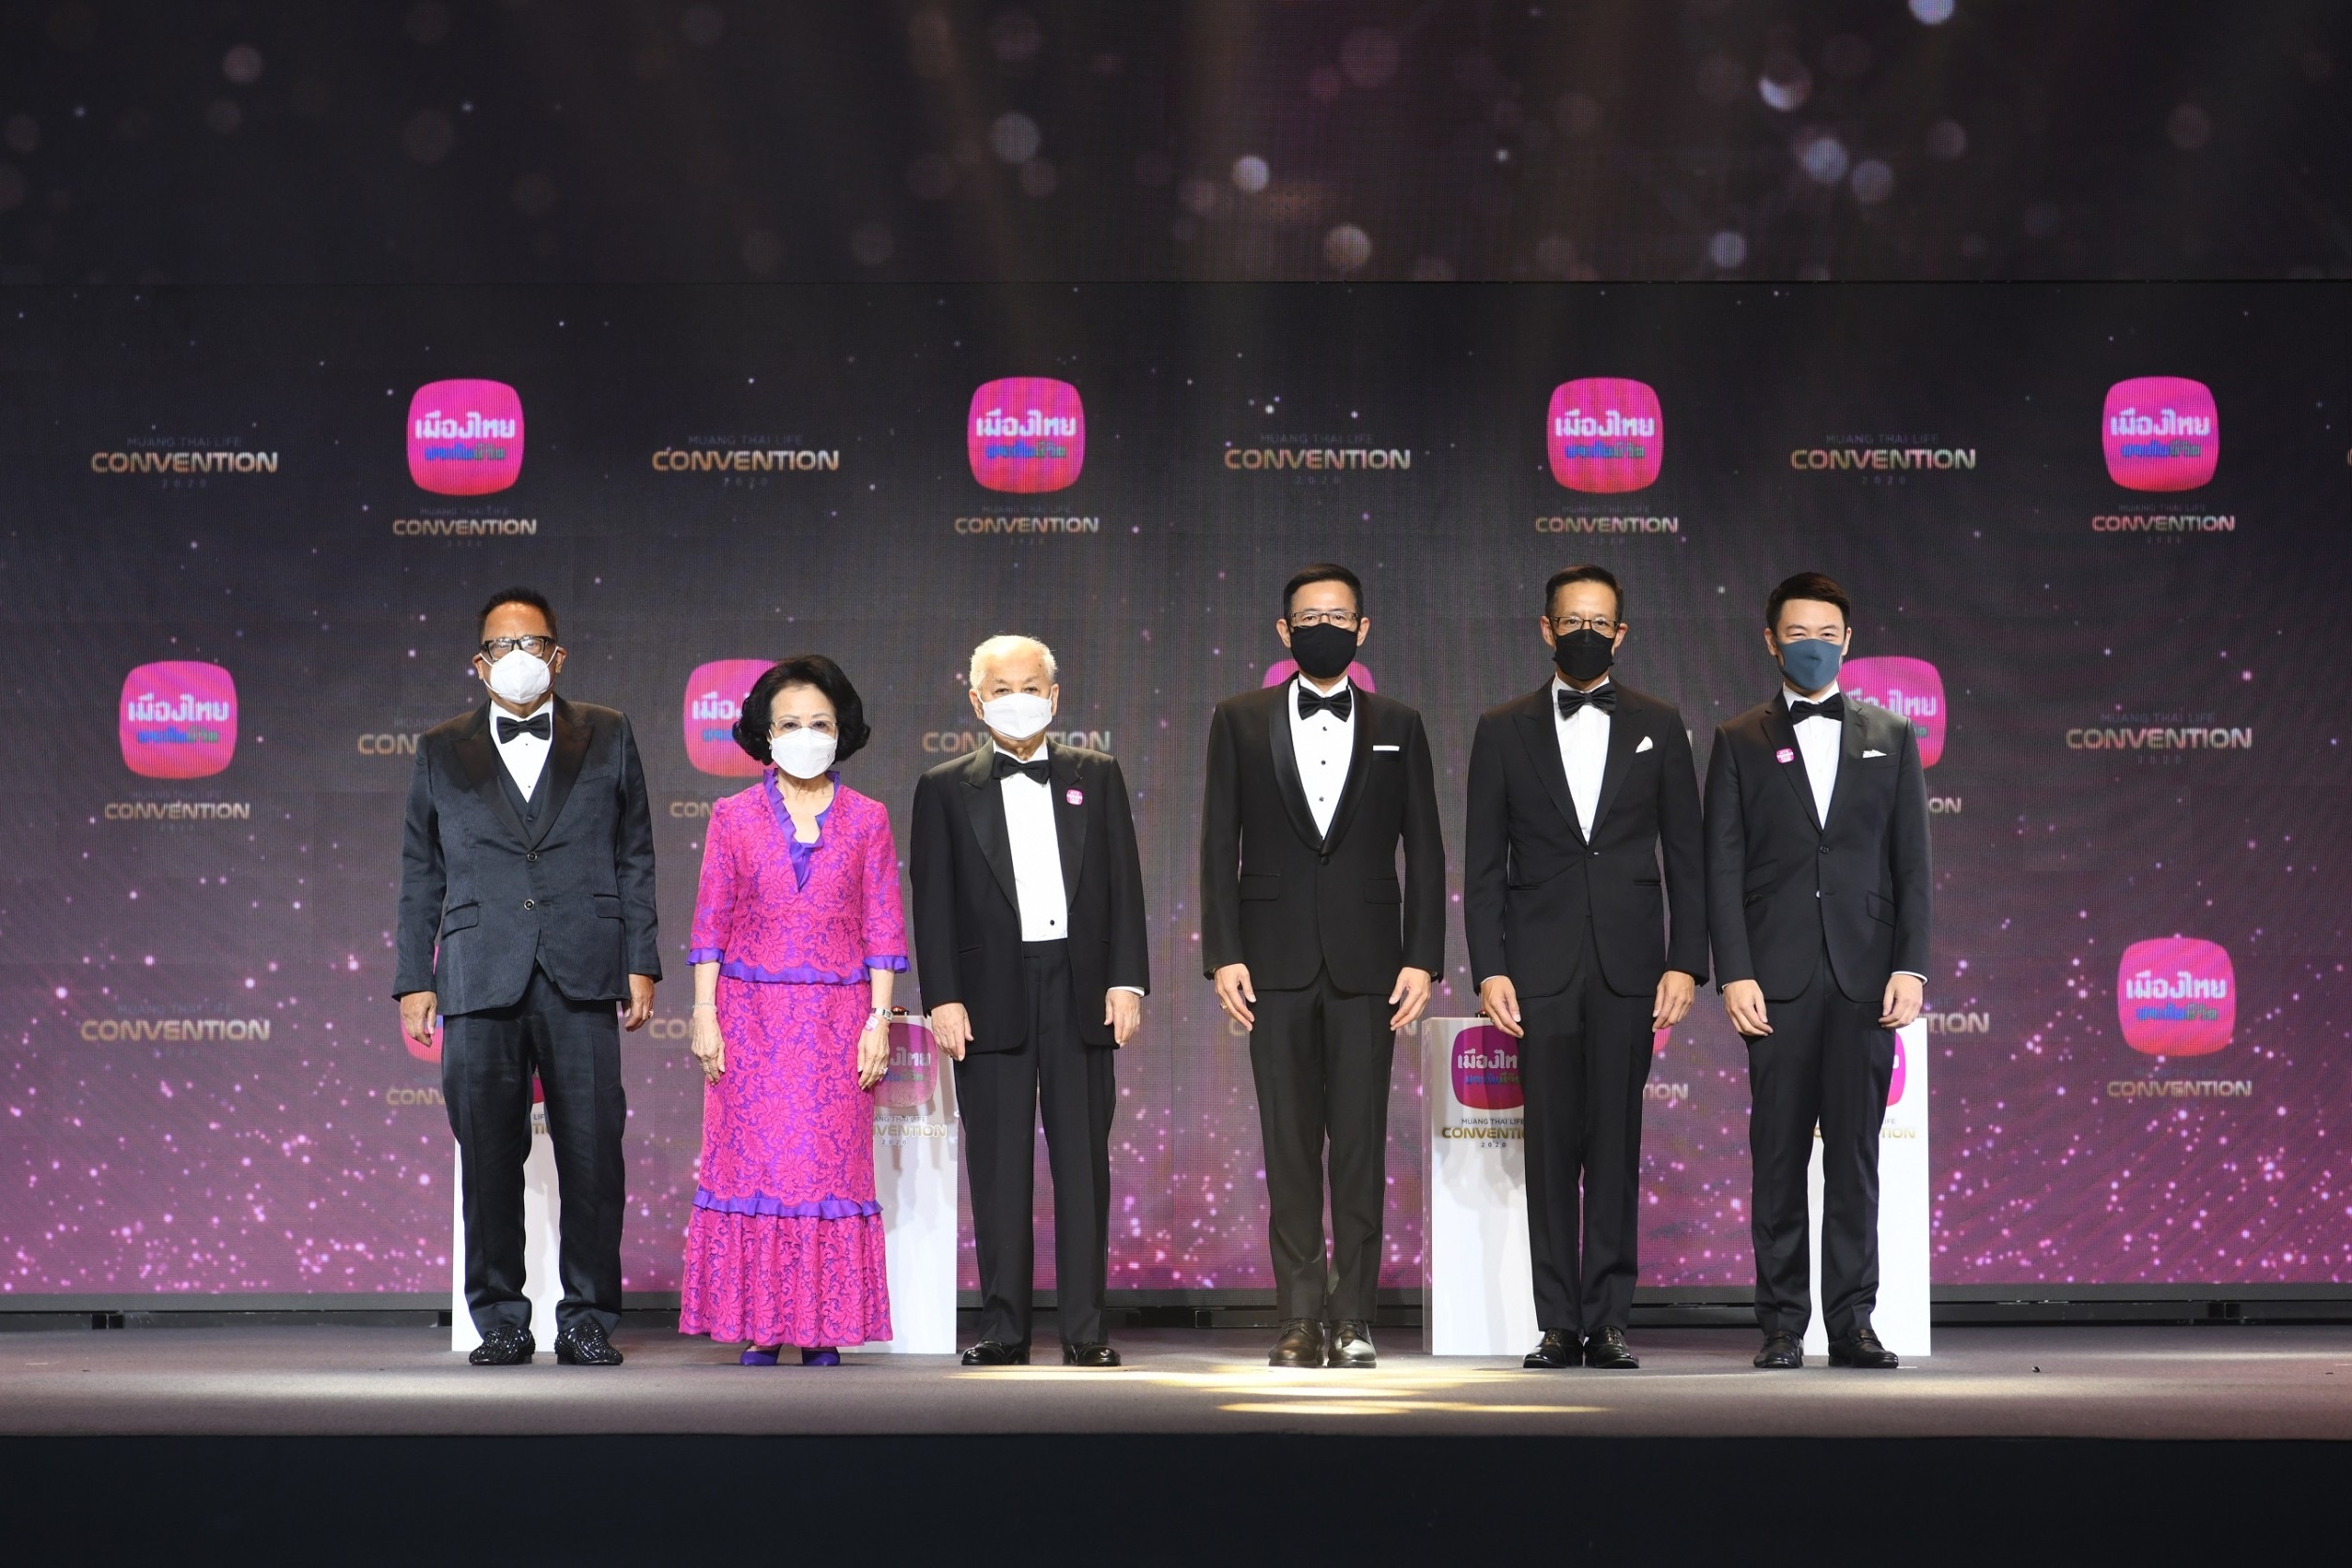 เมืองไทยประกันชีวิต จัดพิธีมอบรางวัลเกียรติยศ MUANG THAI LIFE CONVENTION 2020